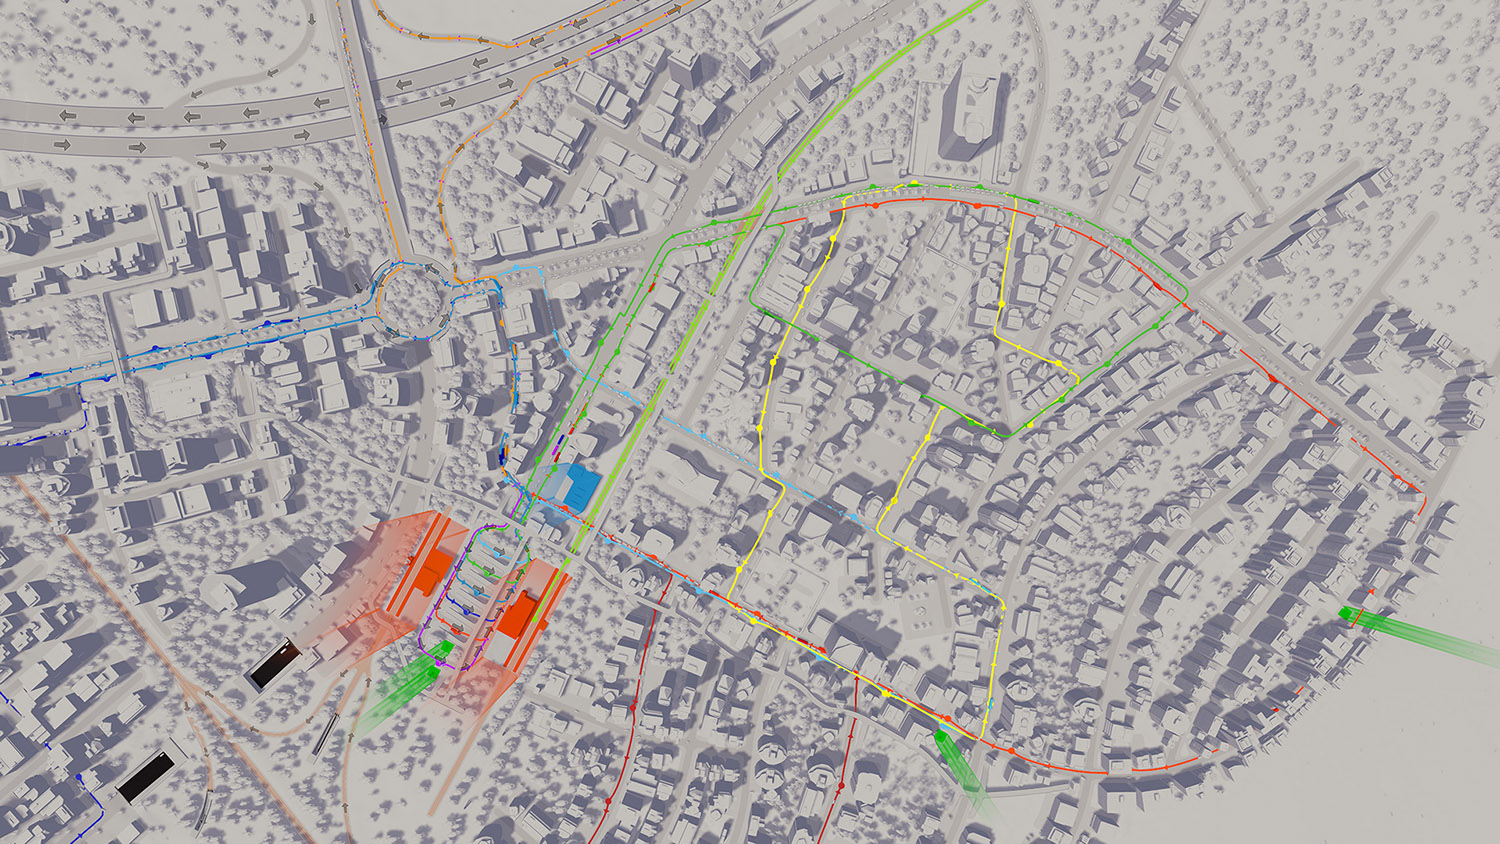 城市:天际线 Cities: Skylines For Mac v1.16.1-f2 模拟游戏中文版包含全DLC